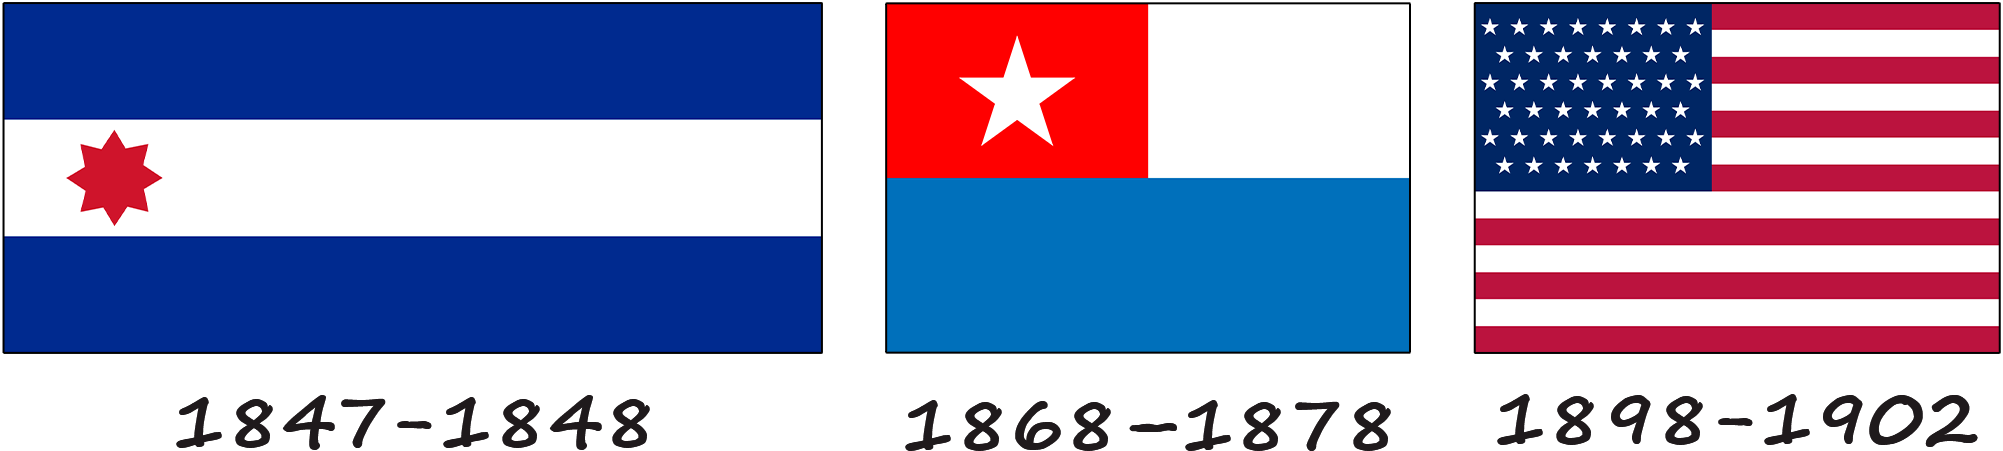 Histoire du drapeau cubain